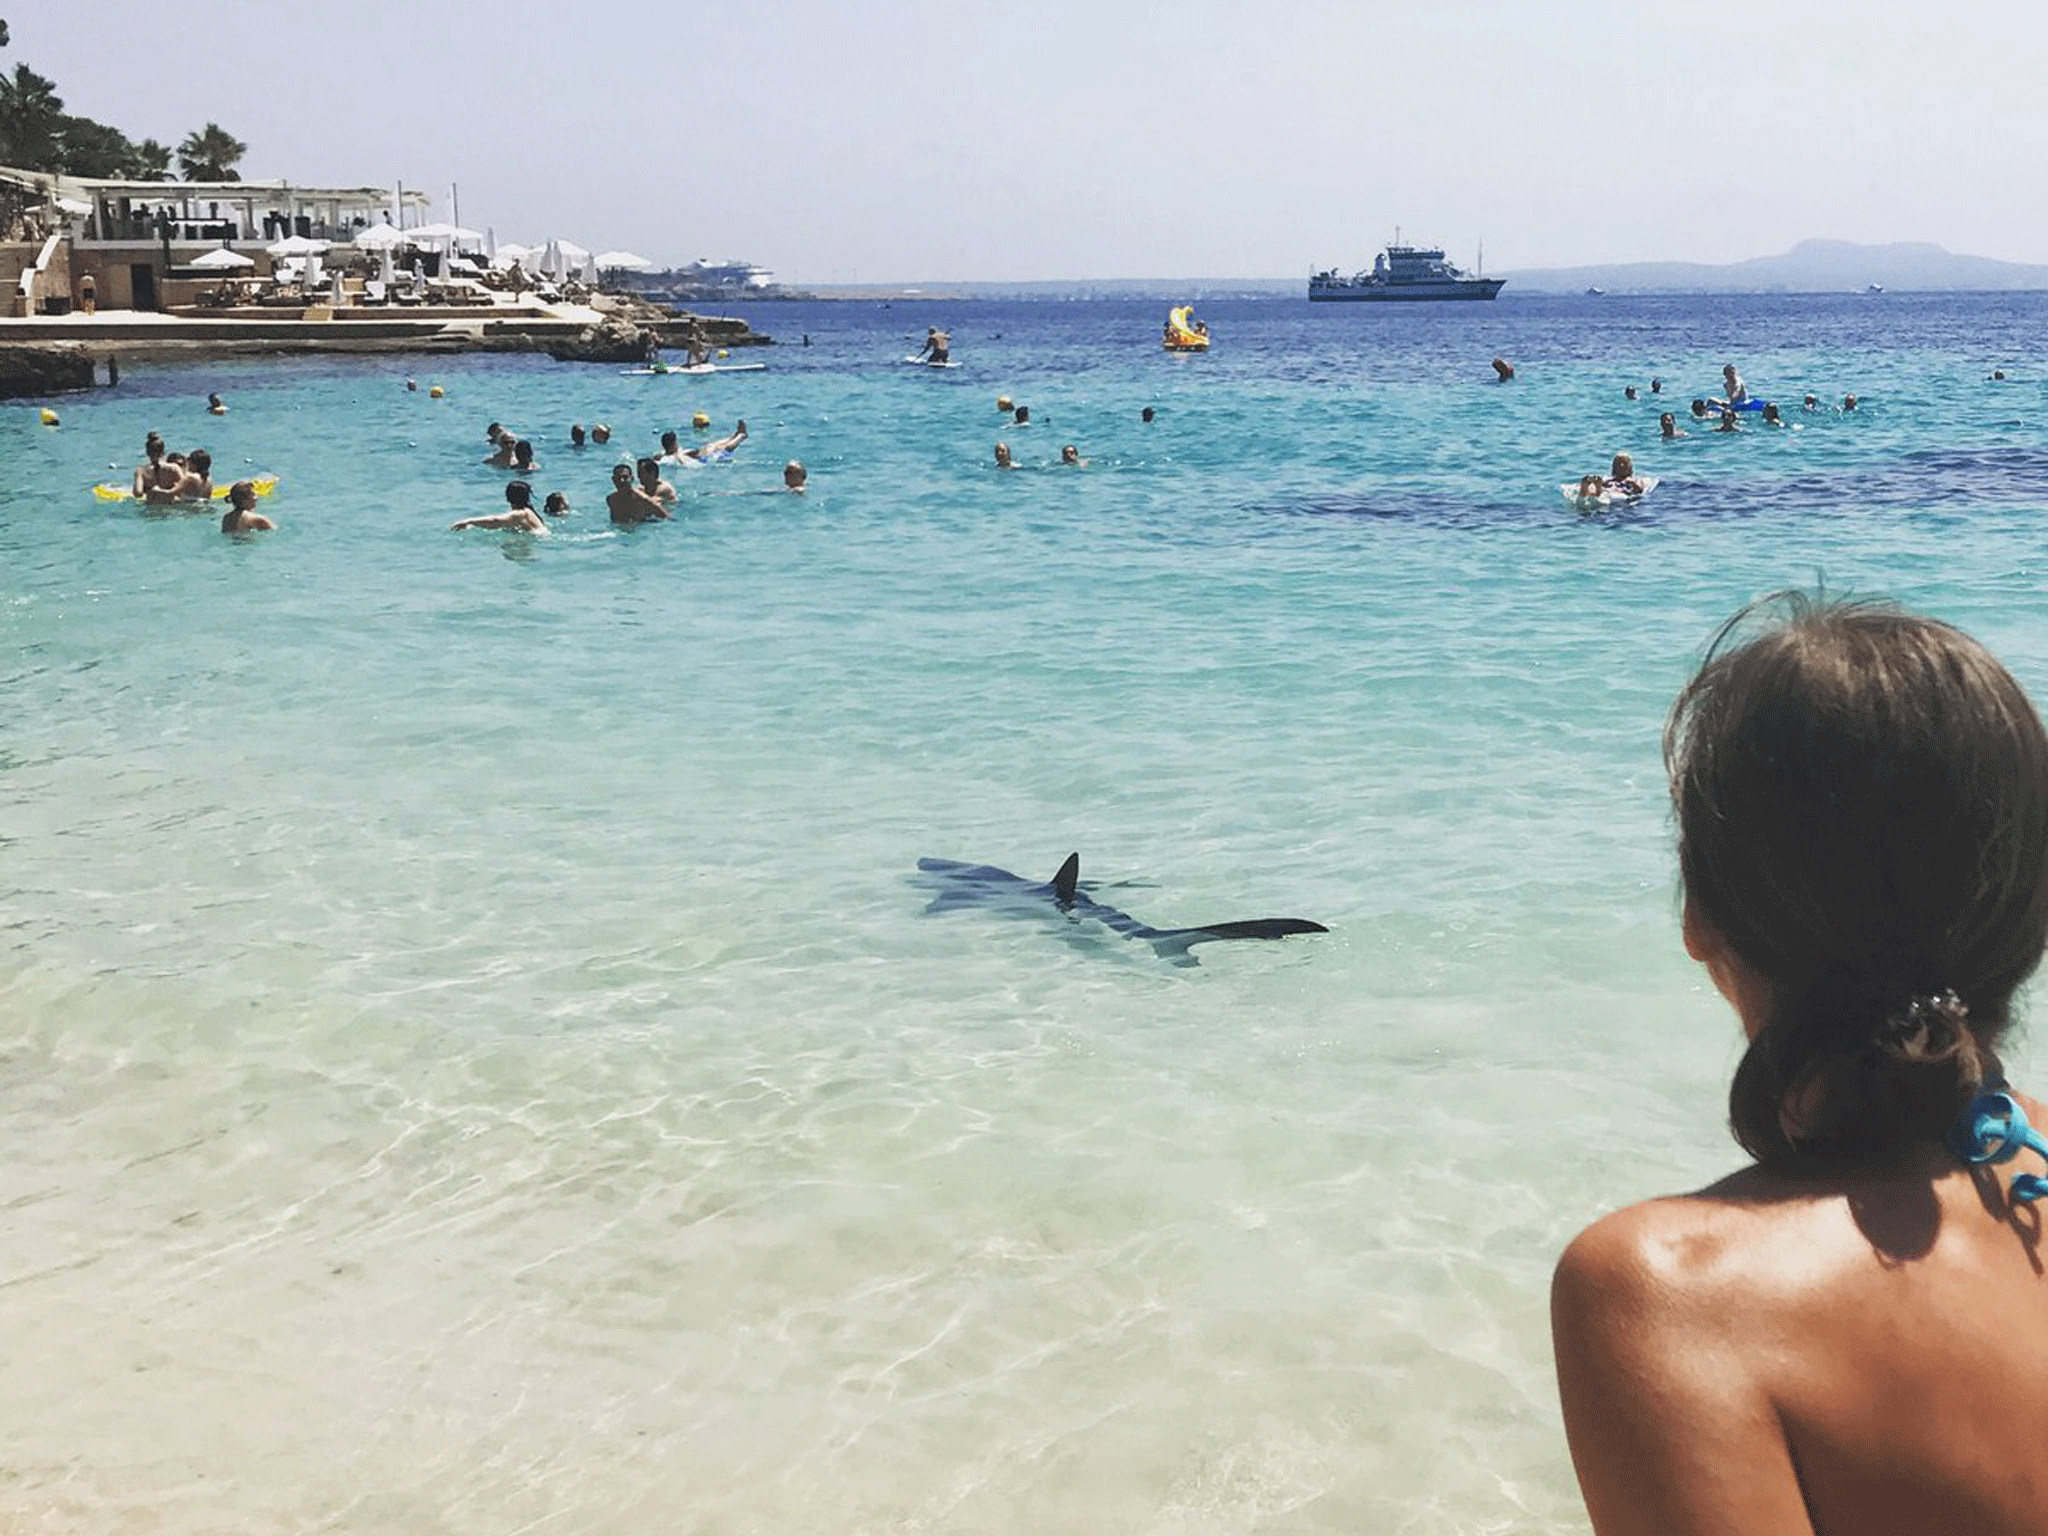 A blue shark is seen off the coast of Majorca